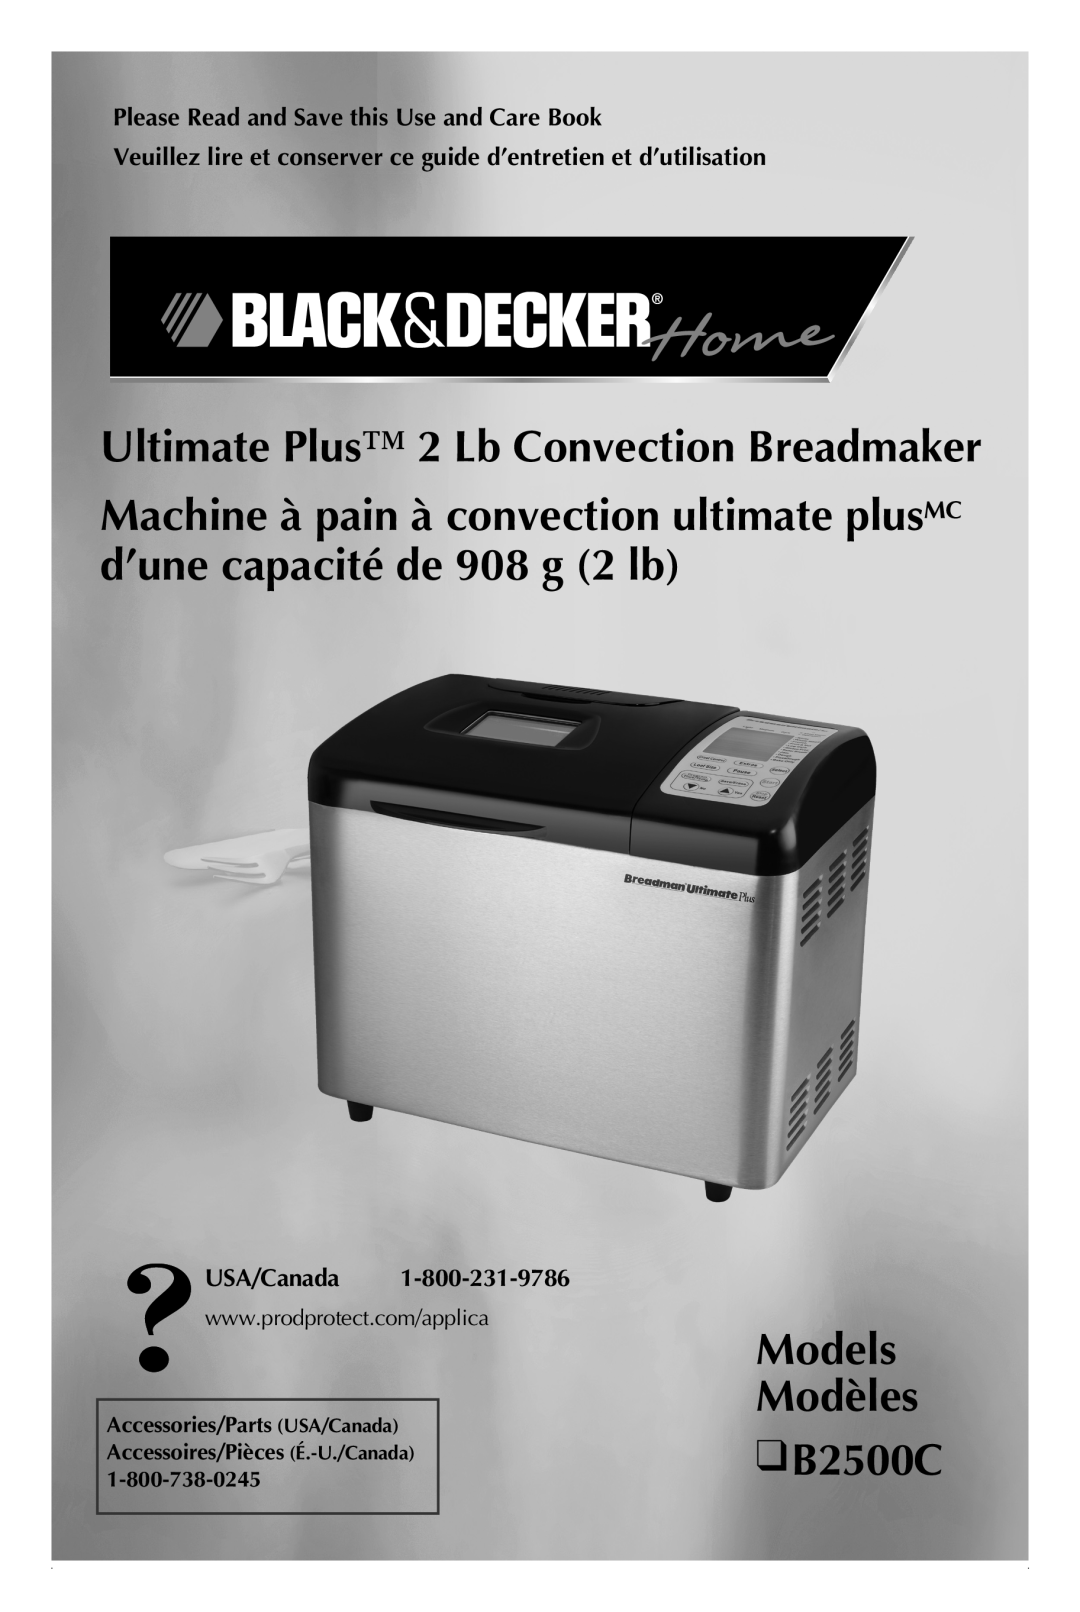 Black & Decker B2500C manual Ultimate Plus 2 Lb Convection Breadmaker, Models Modèles 